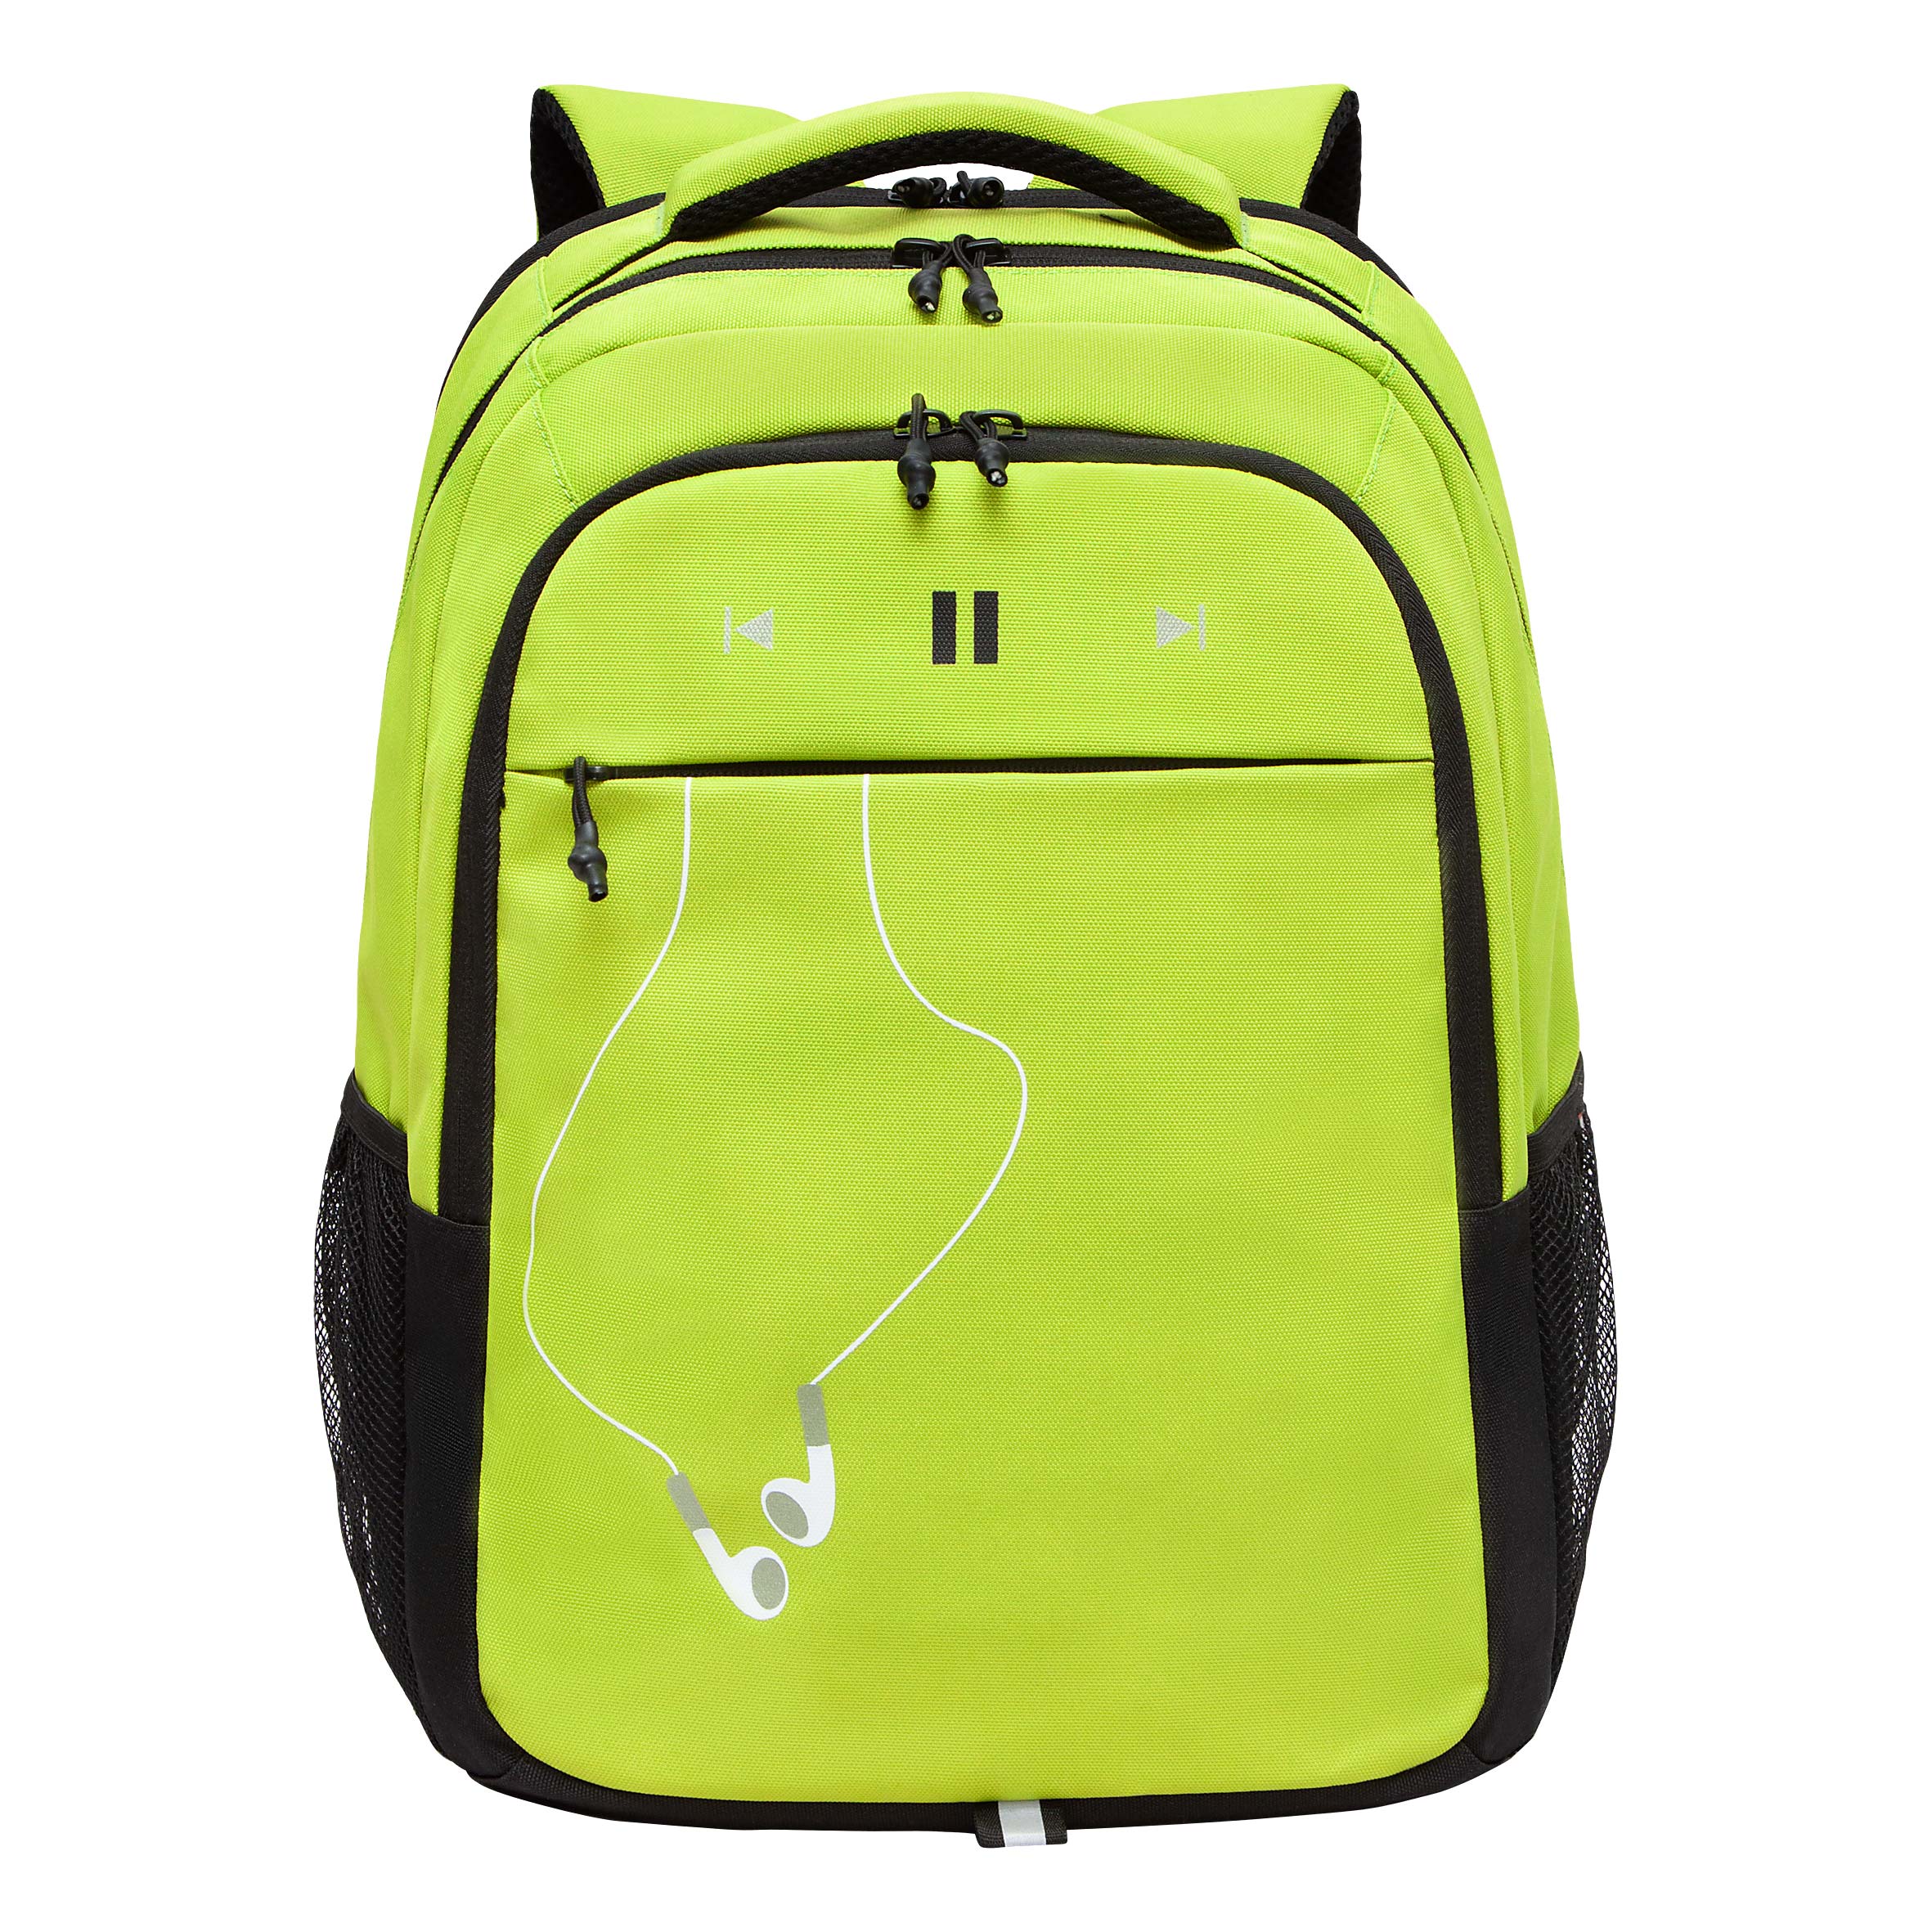 Рюкзак молодежный GRIZZLY с карманом для ноутбука 15, для мальчика, RU-432-4 4 рюкзак молодежный grizzly rd 440 4 1 с карманом для ноутбука 13 золото